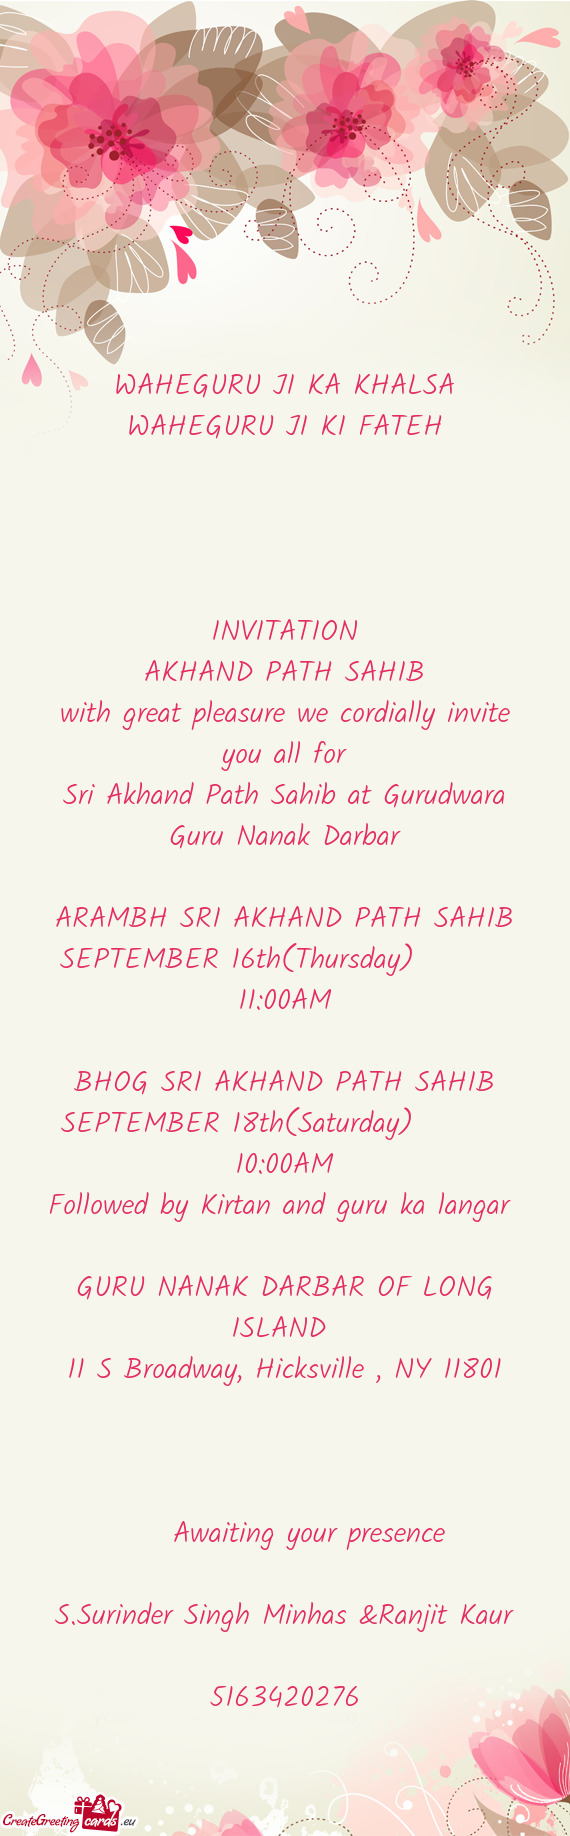 Sri Akhand Path Sahib at Gurudwara Guru Nanak Darbar